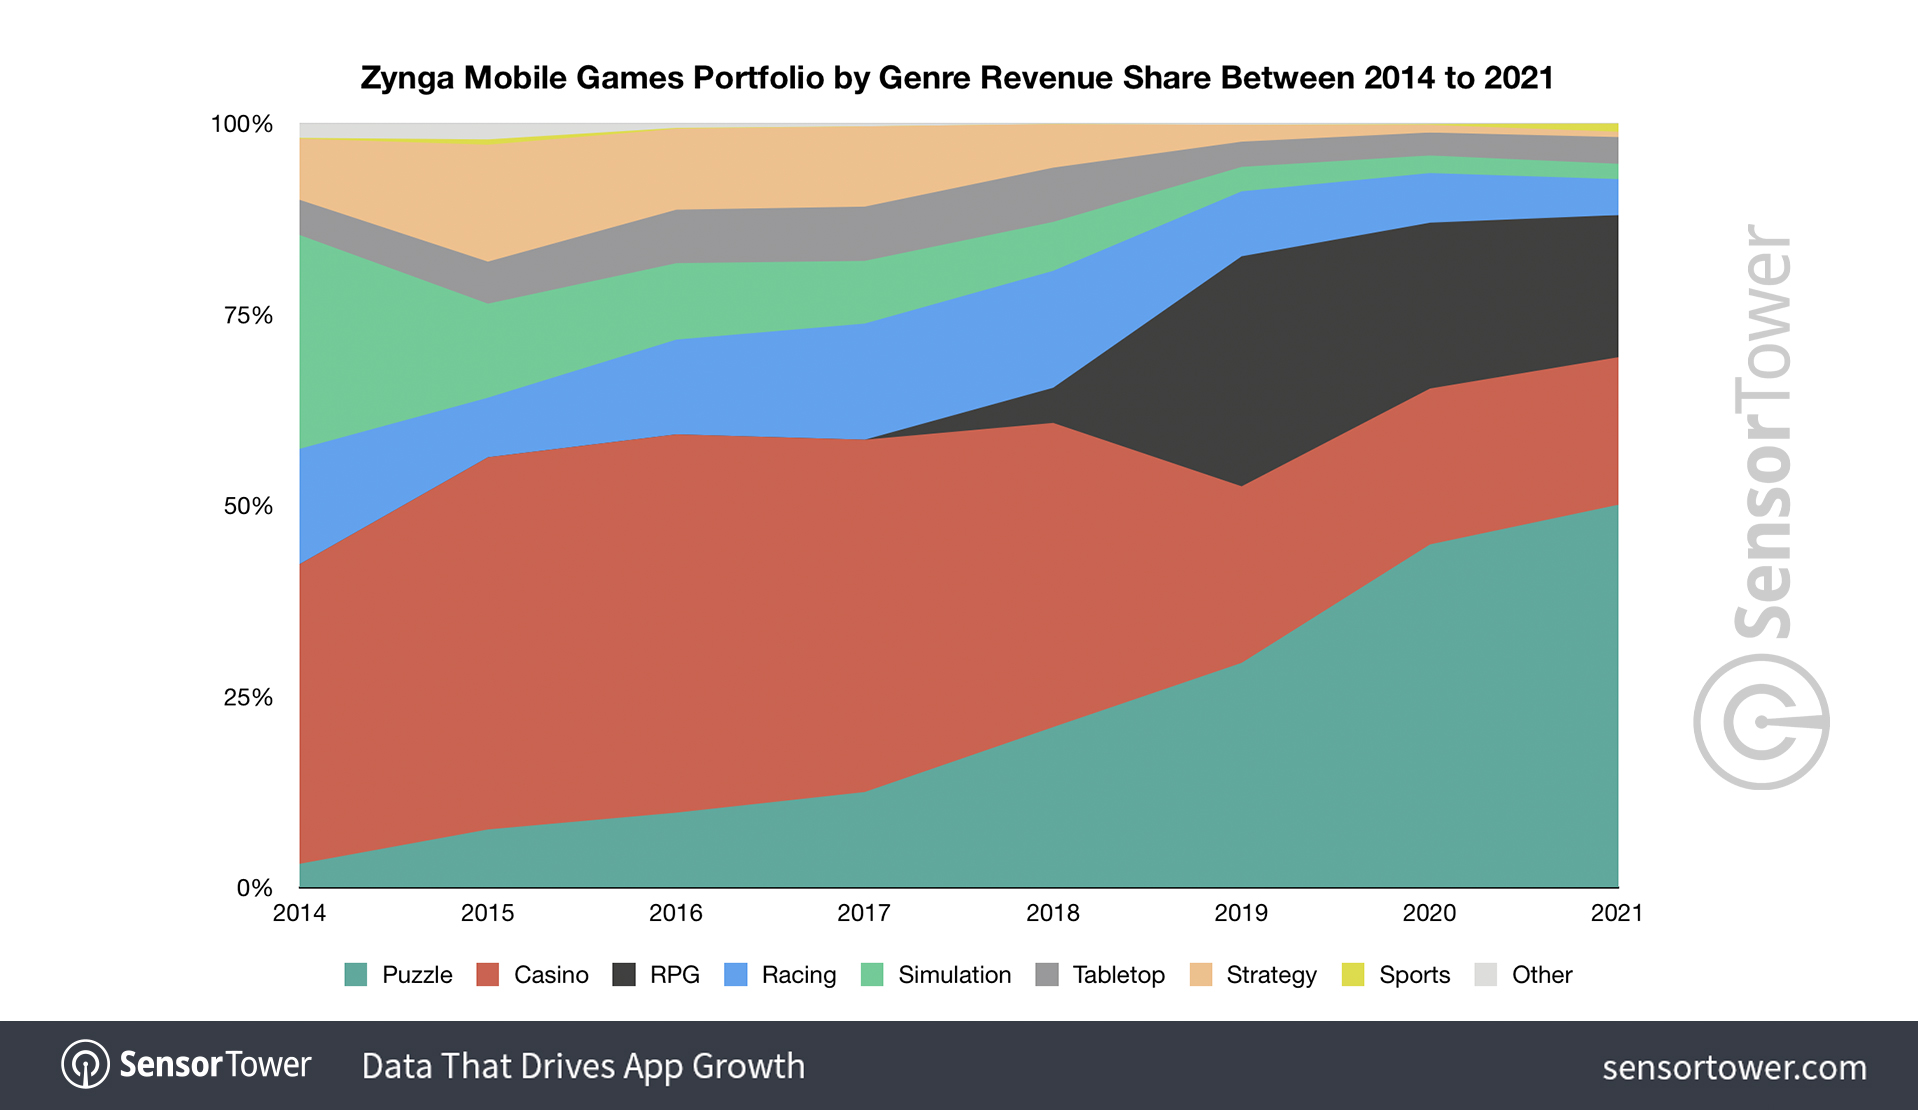 zynga-mobile-games-portfolio-by-genre-revenue-share-2014-2021